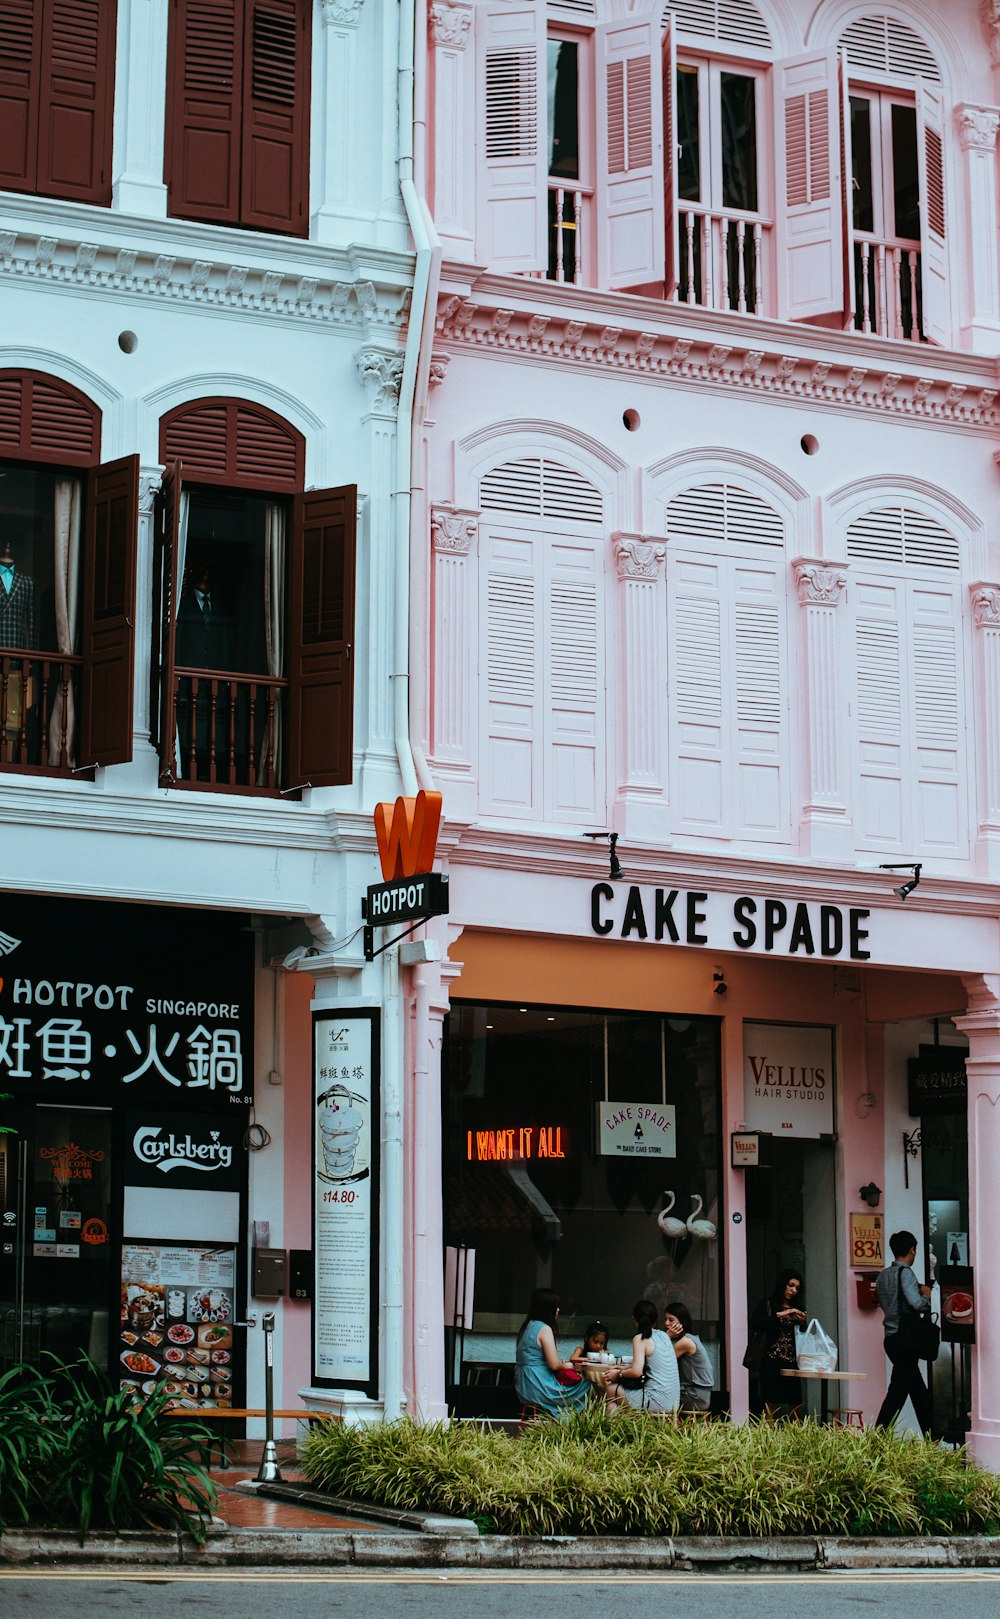 Cake Spade signage